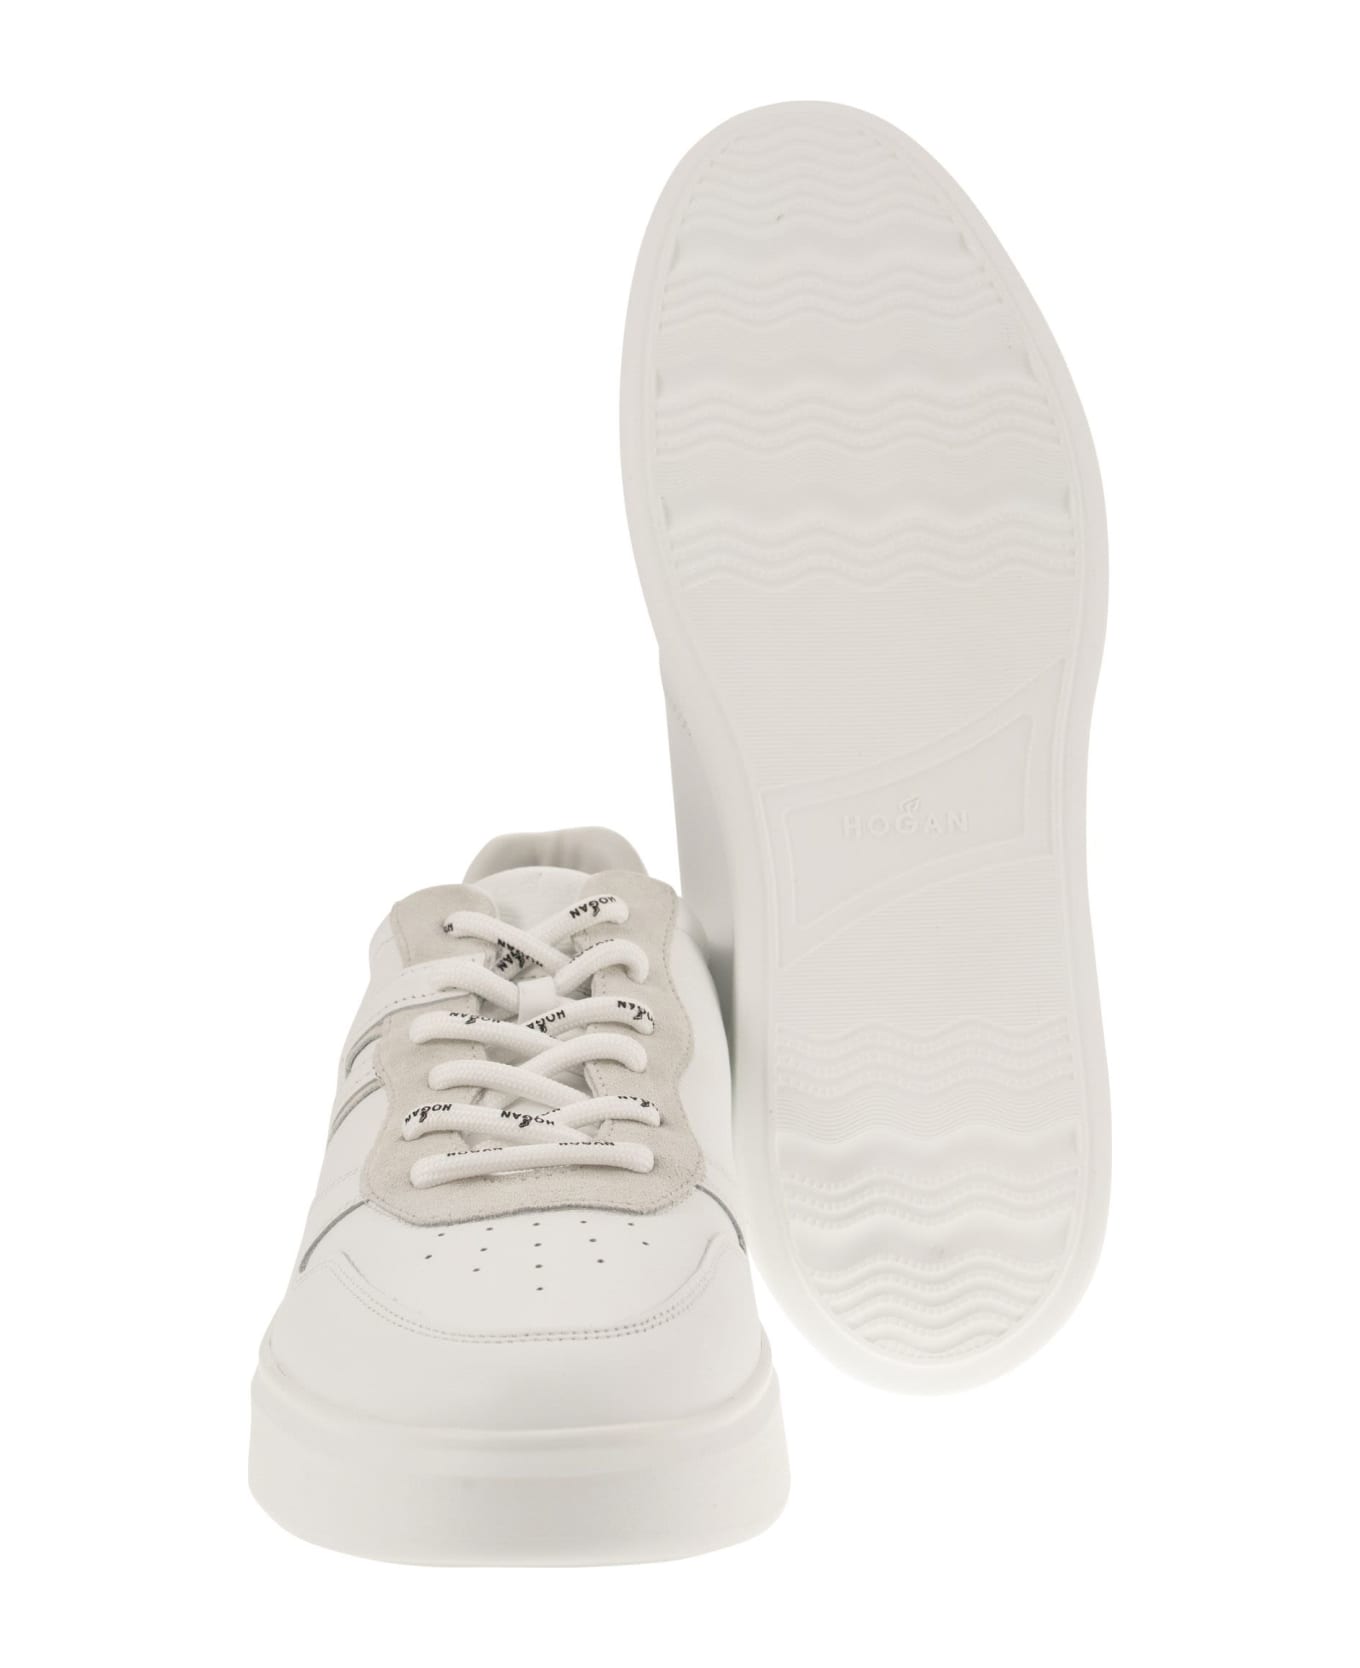 Hogan H580 - Sneakers - White スニーカー